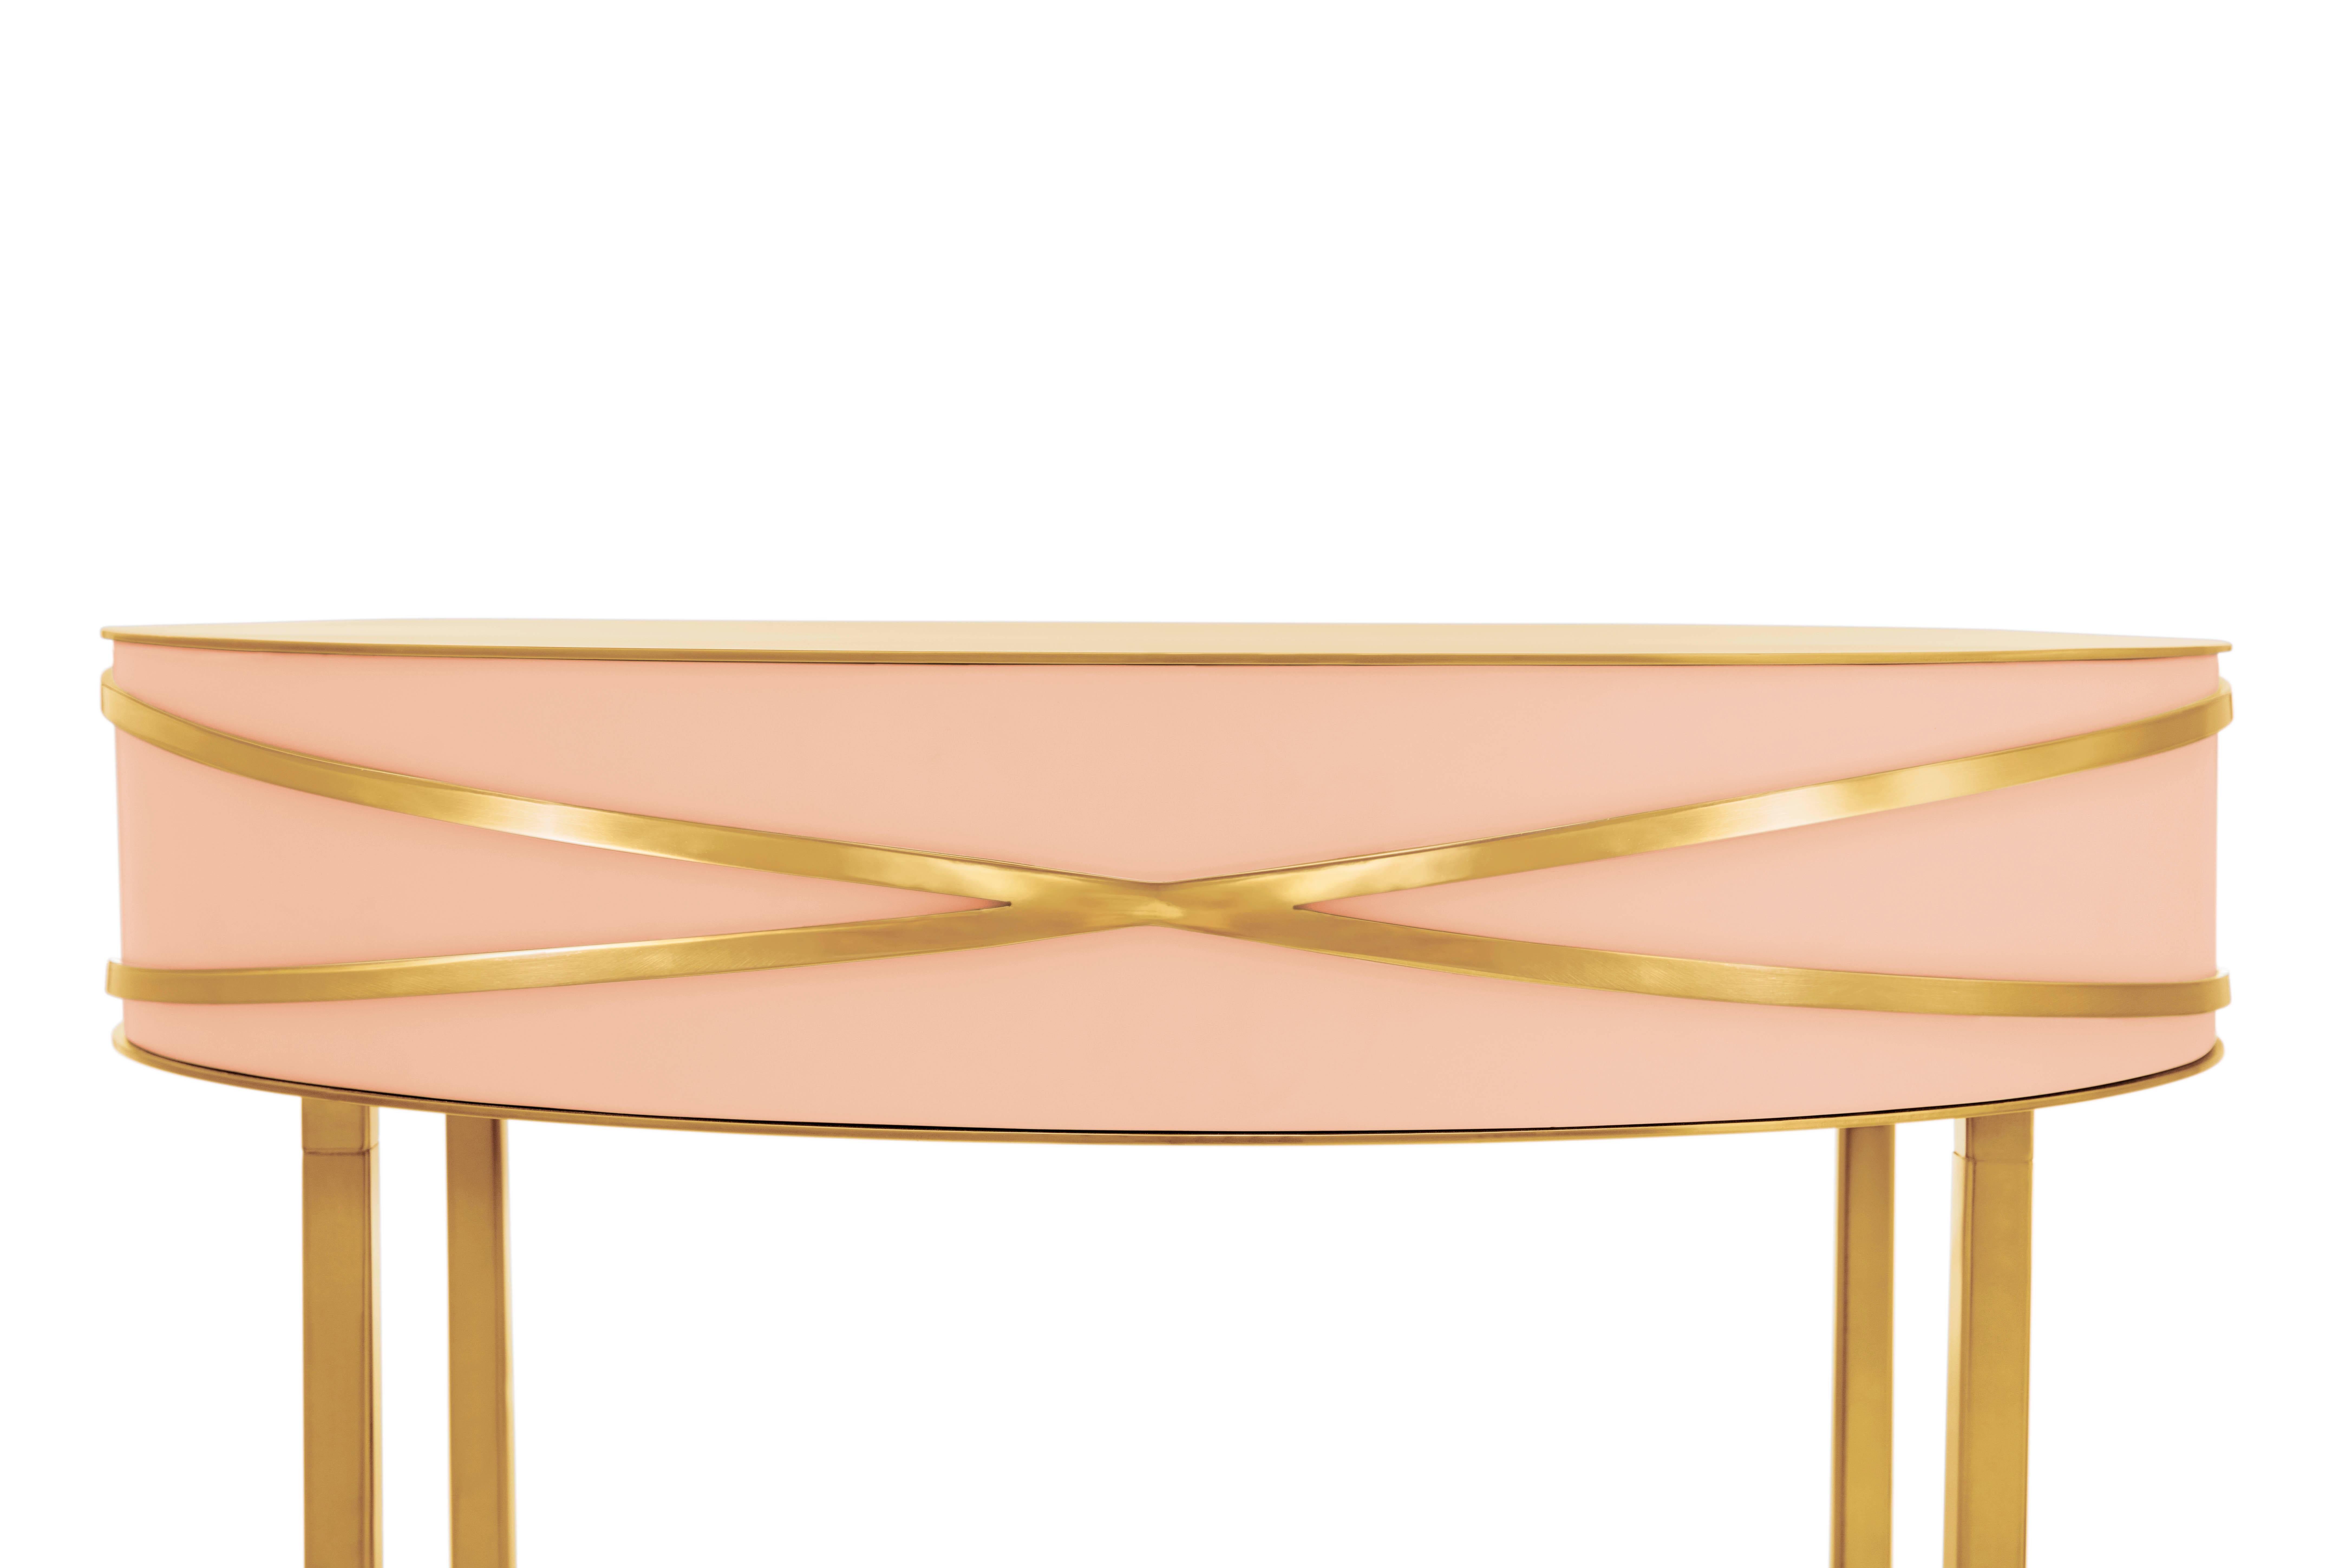 La table console ou table de chevet Stella Pink avec garnitures dorées de Nika Zupanc est une table console rose avec un tiroir et des garnitures métalliques dorées.

Nika Zupanc, designer slovène de renom, n'hésite jamais à redéfinir le statu quo